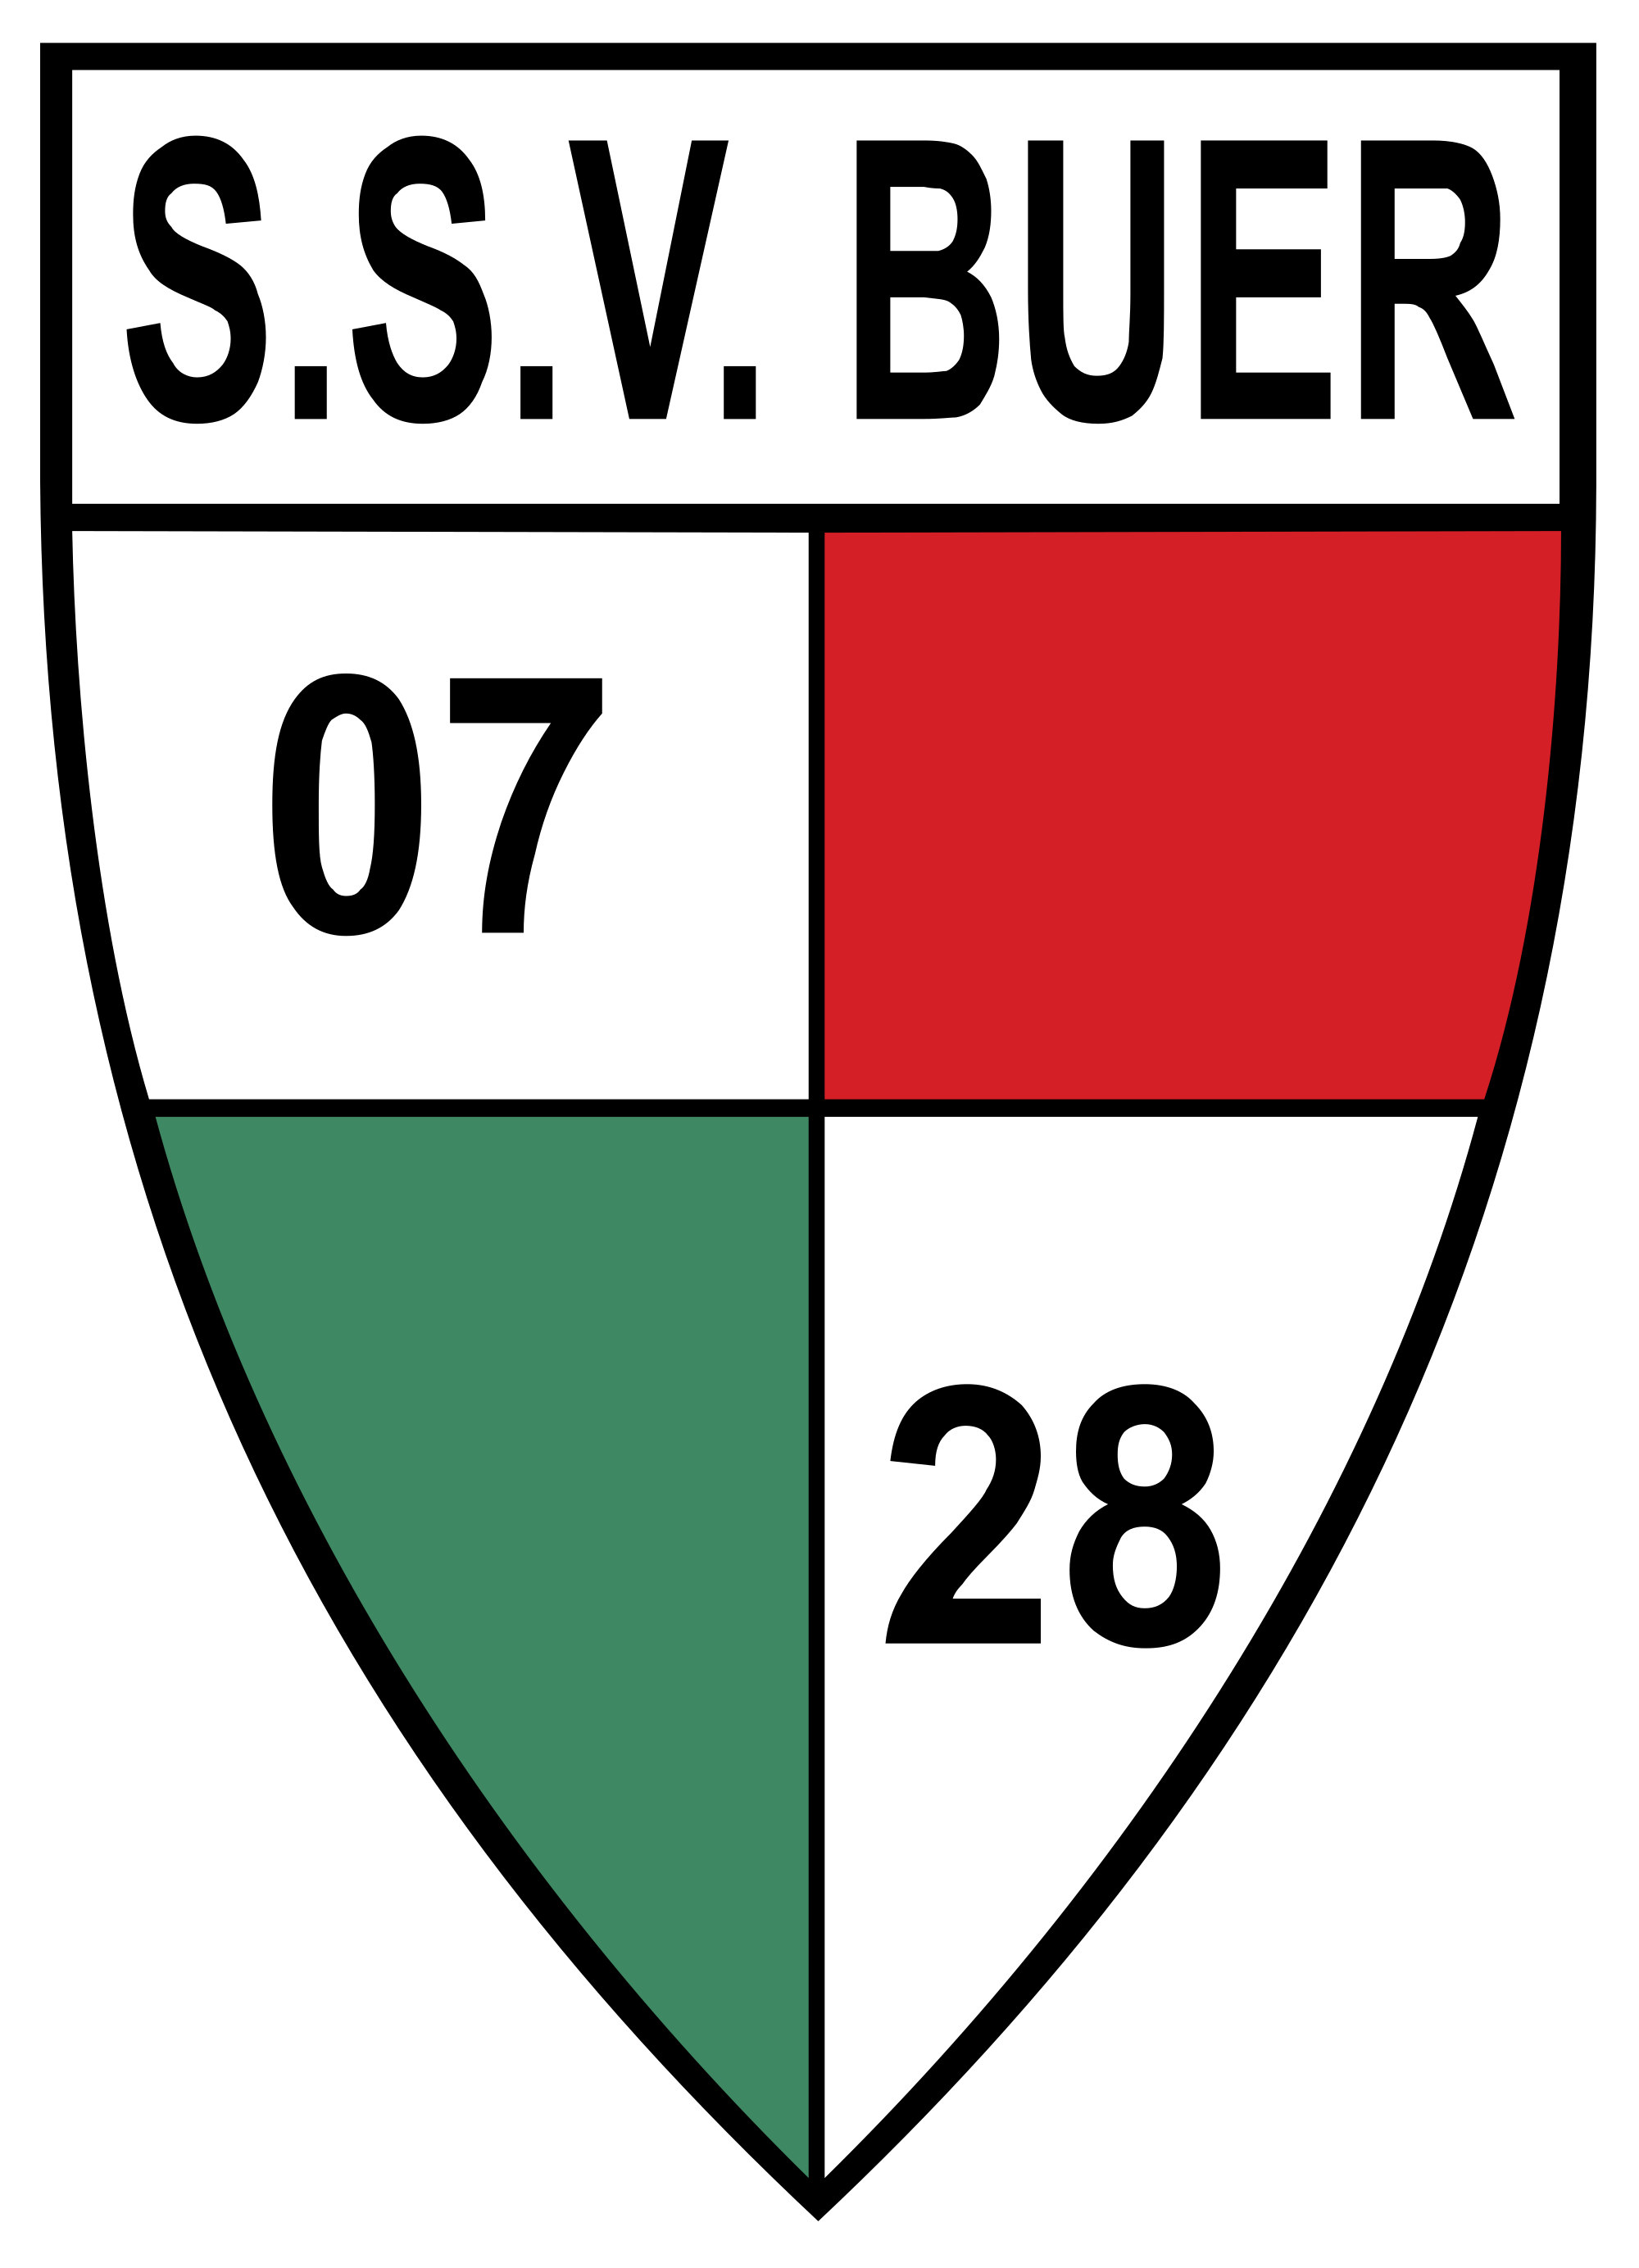 Wappen SSV Buer 07/28